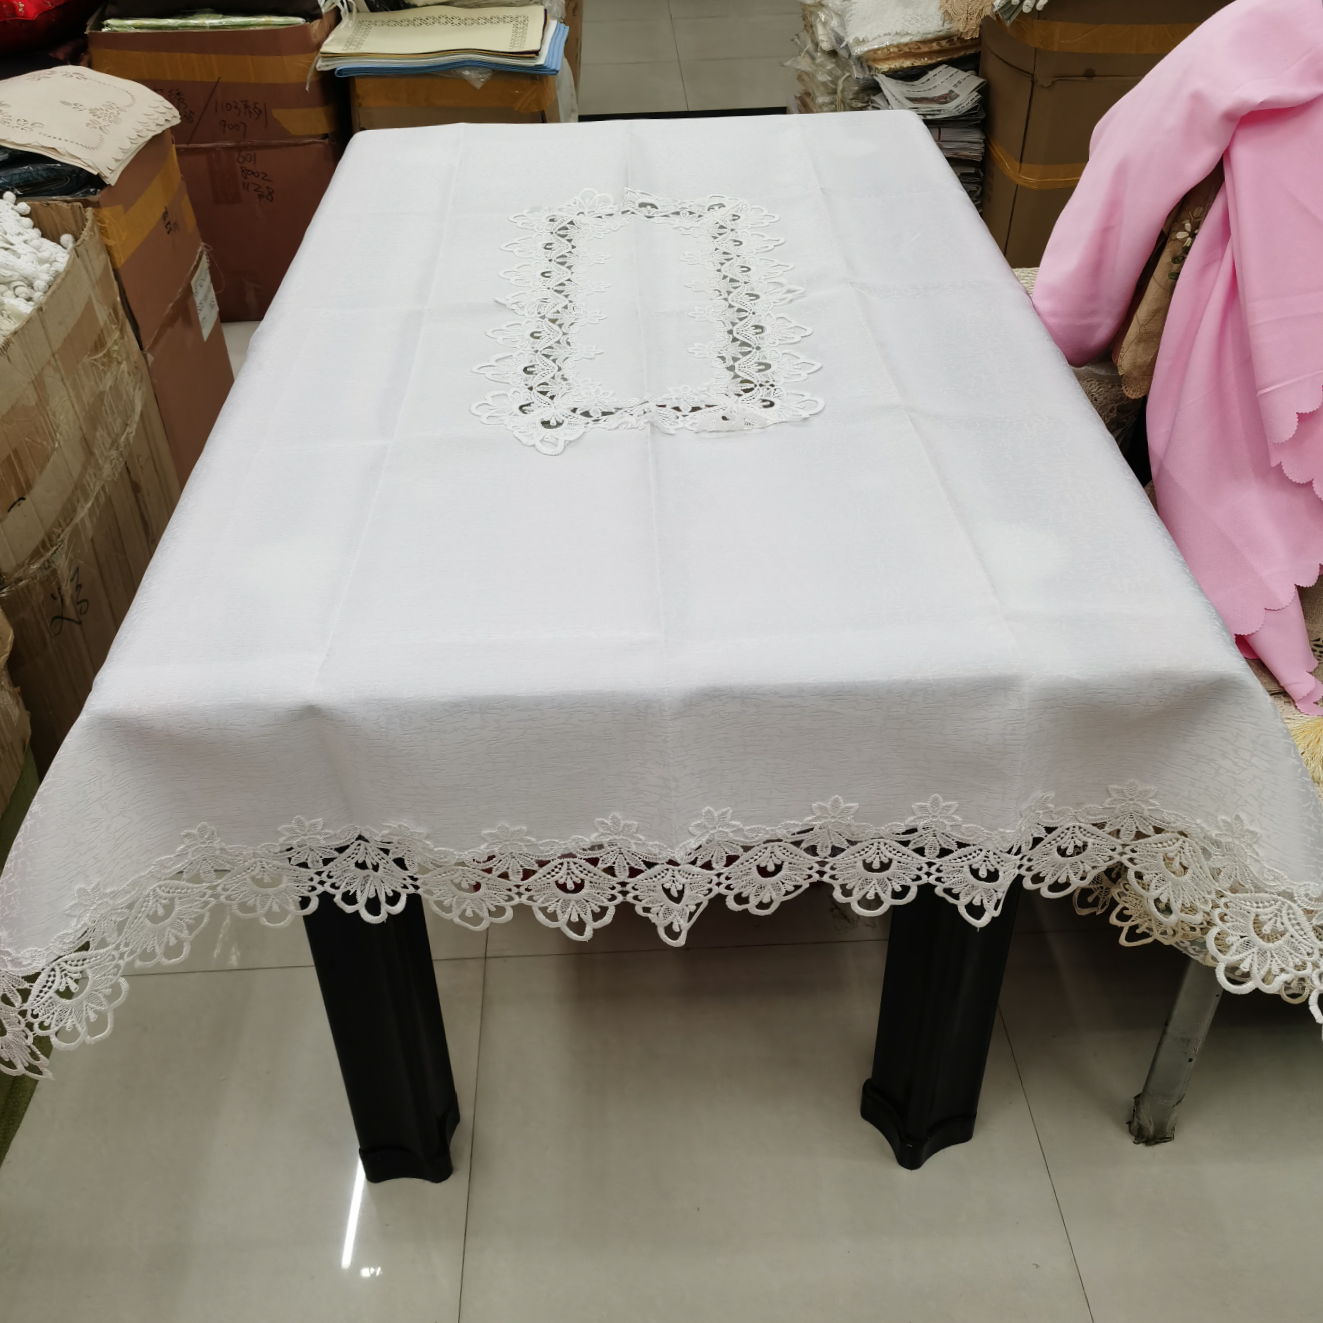 水溶花边提花贡缎桌布。尺寸120×150。图